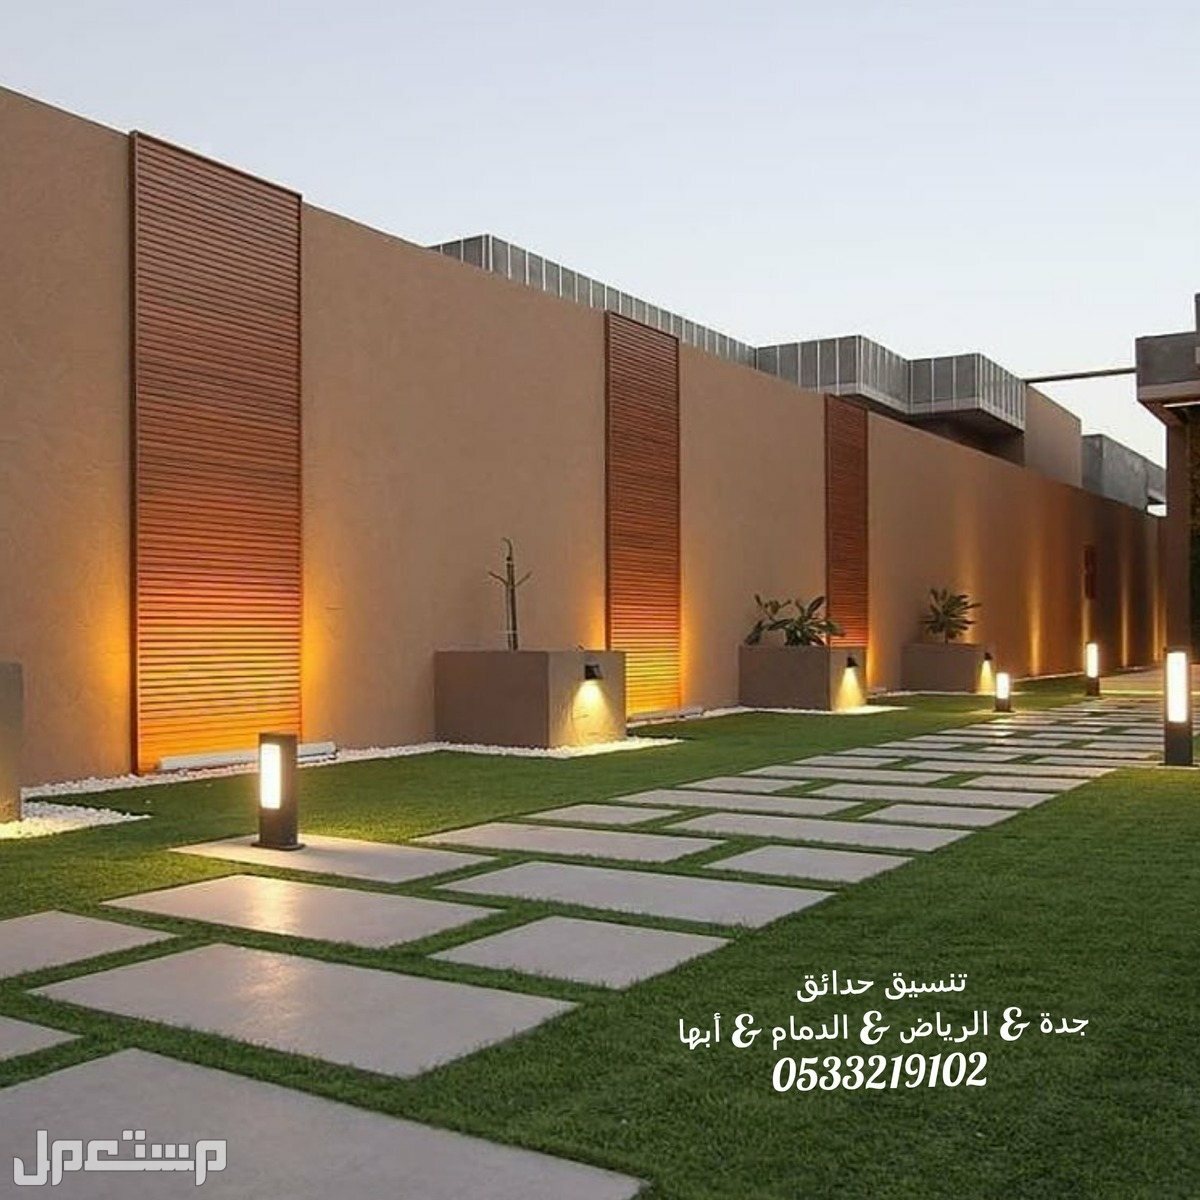 تزين جدار بالعشب تصميم شلال حديقة تنسيق حدائق السعودية تركيب مظلات جدة عمل حدائق العشب الصناعى